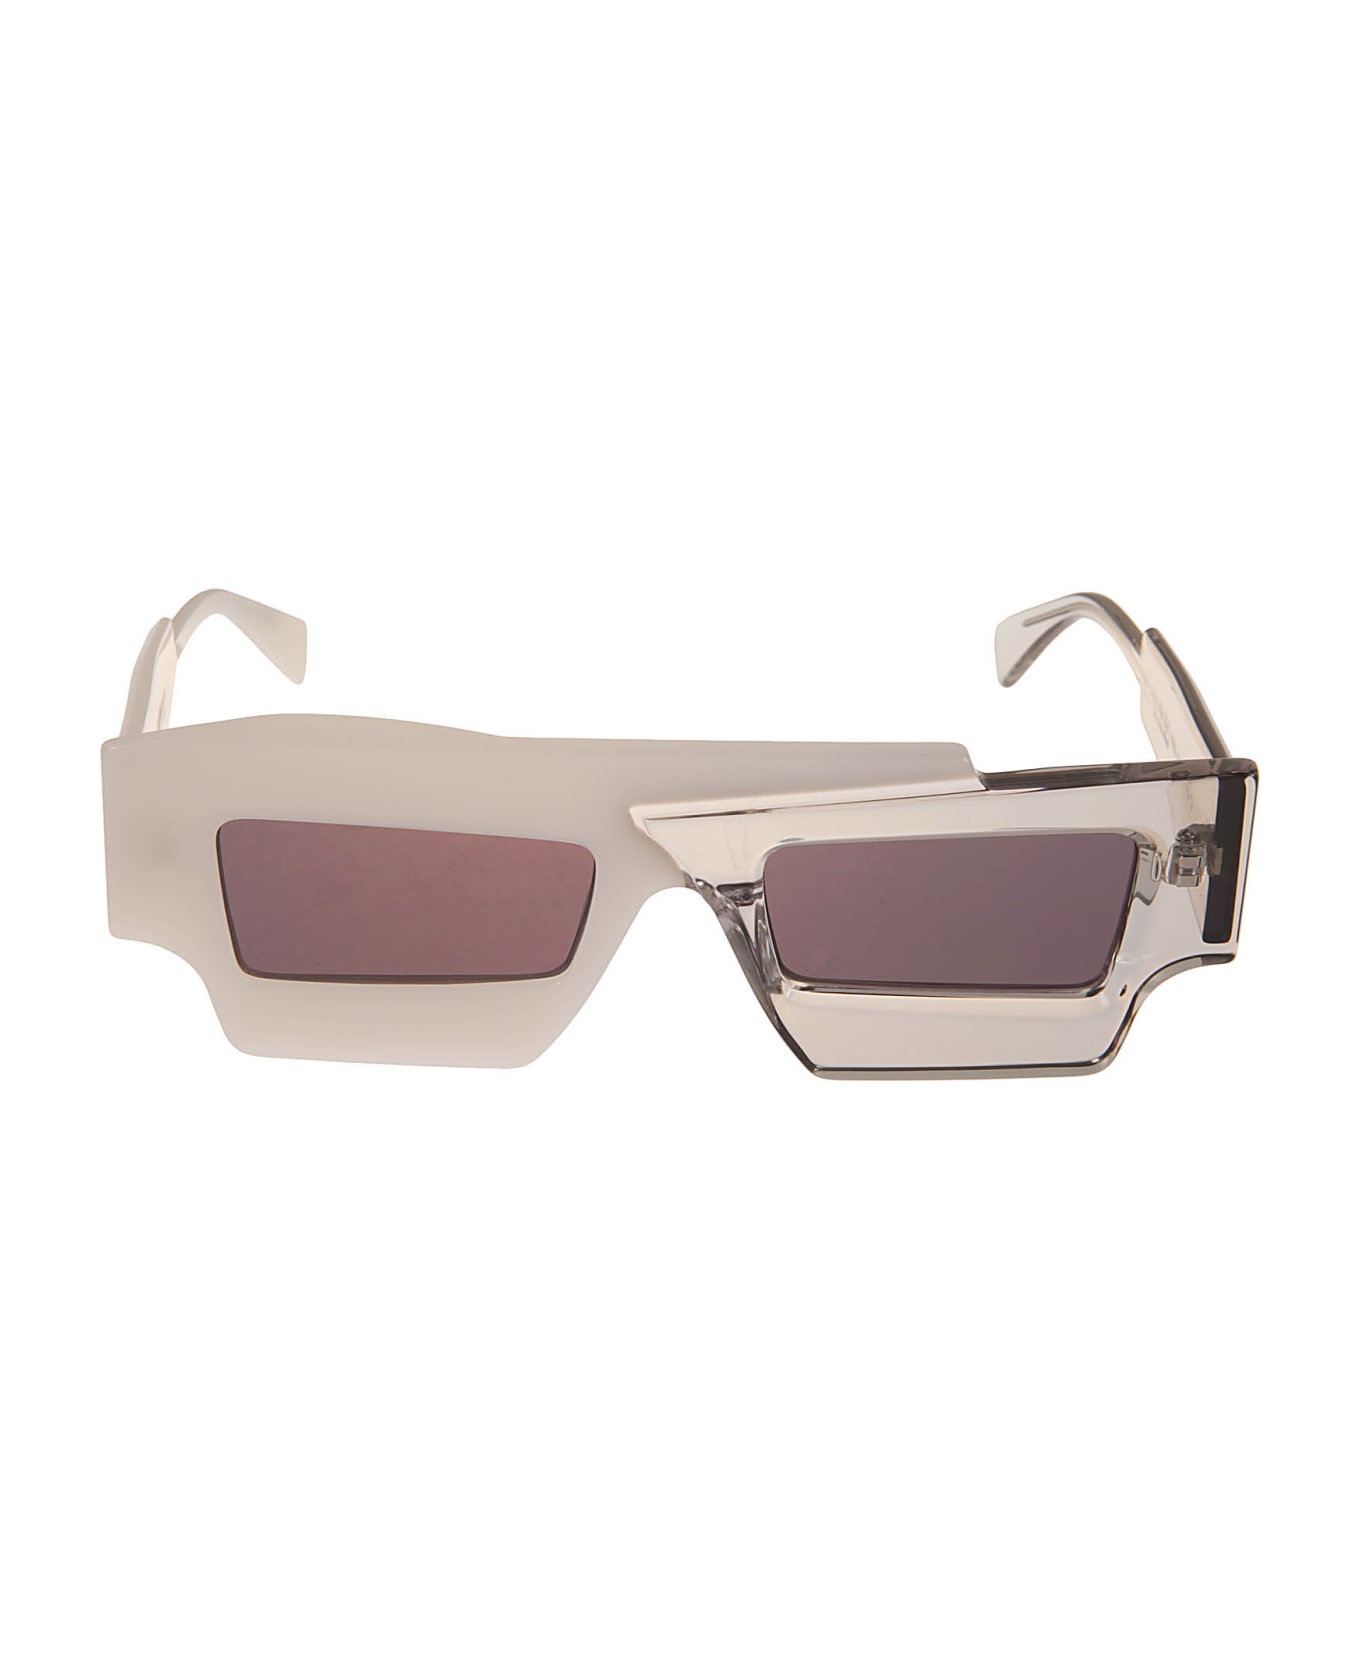 Kuboraum X12 Sunglasses - White サングラス